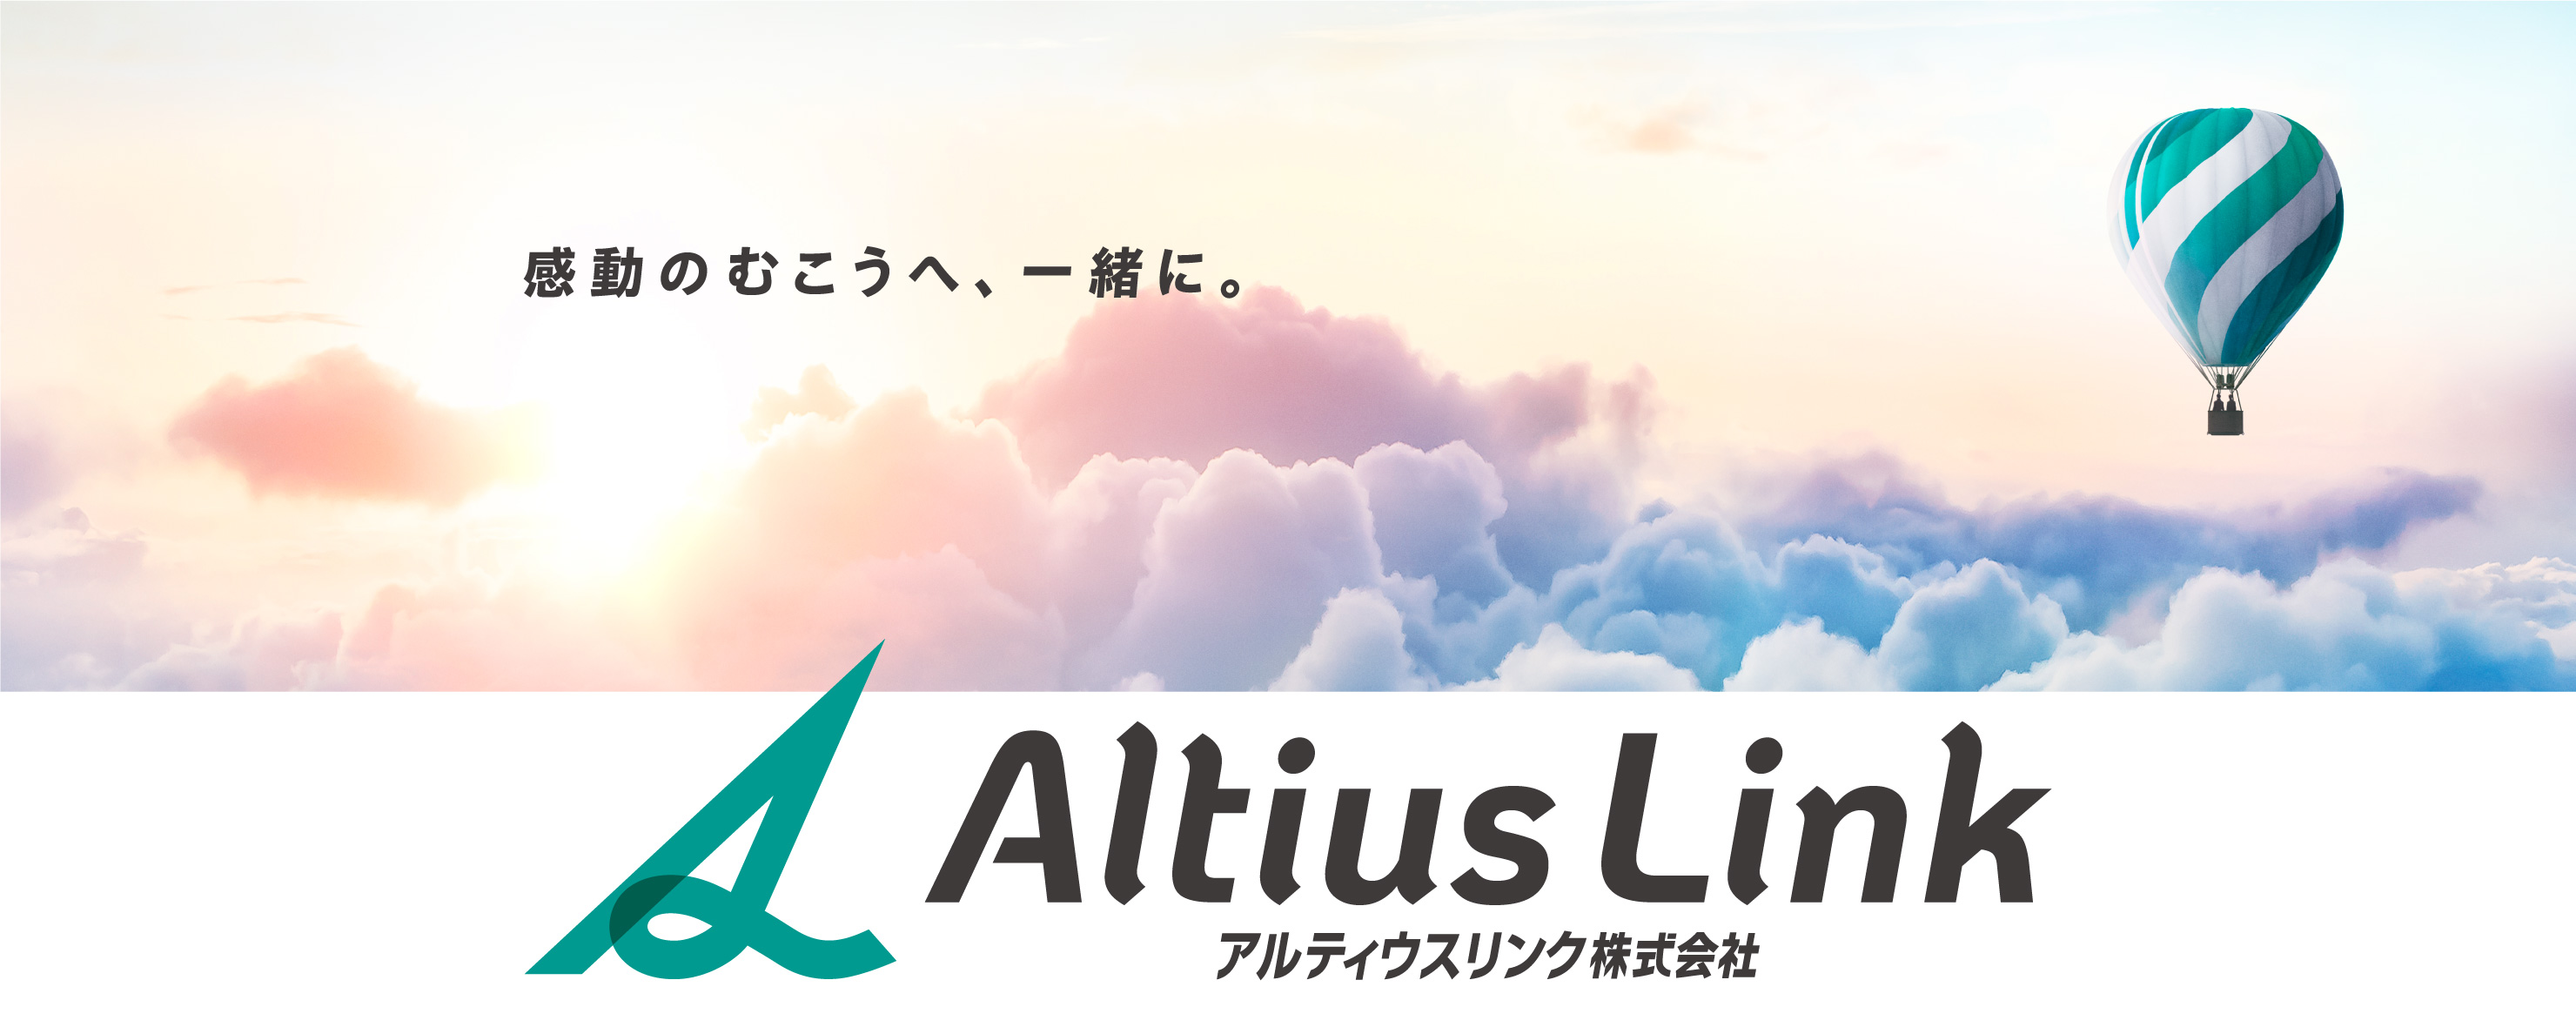 感動の向こうへ、一緒に。 Altius Link アルティウスリンク株式会社